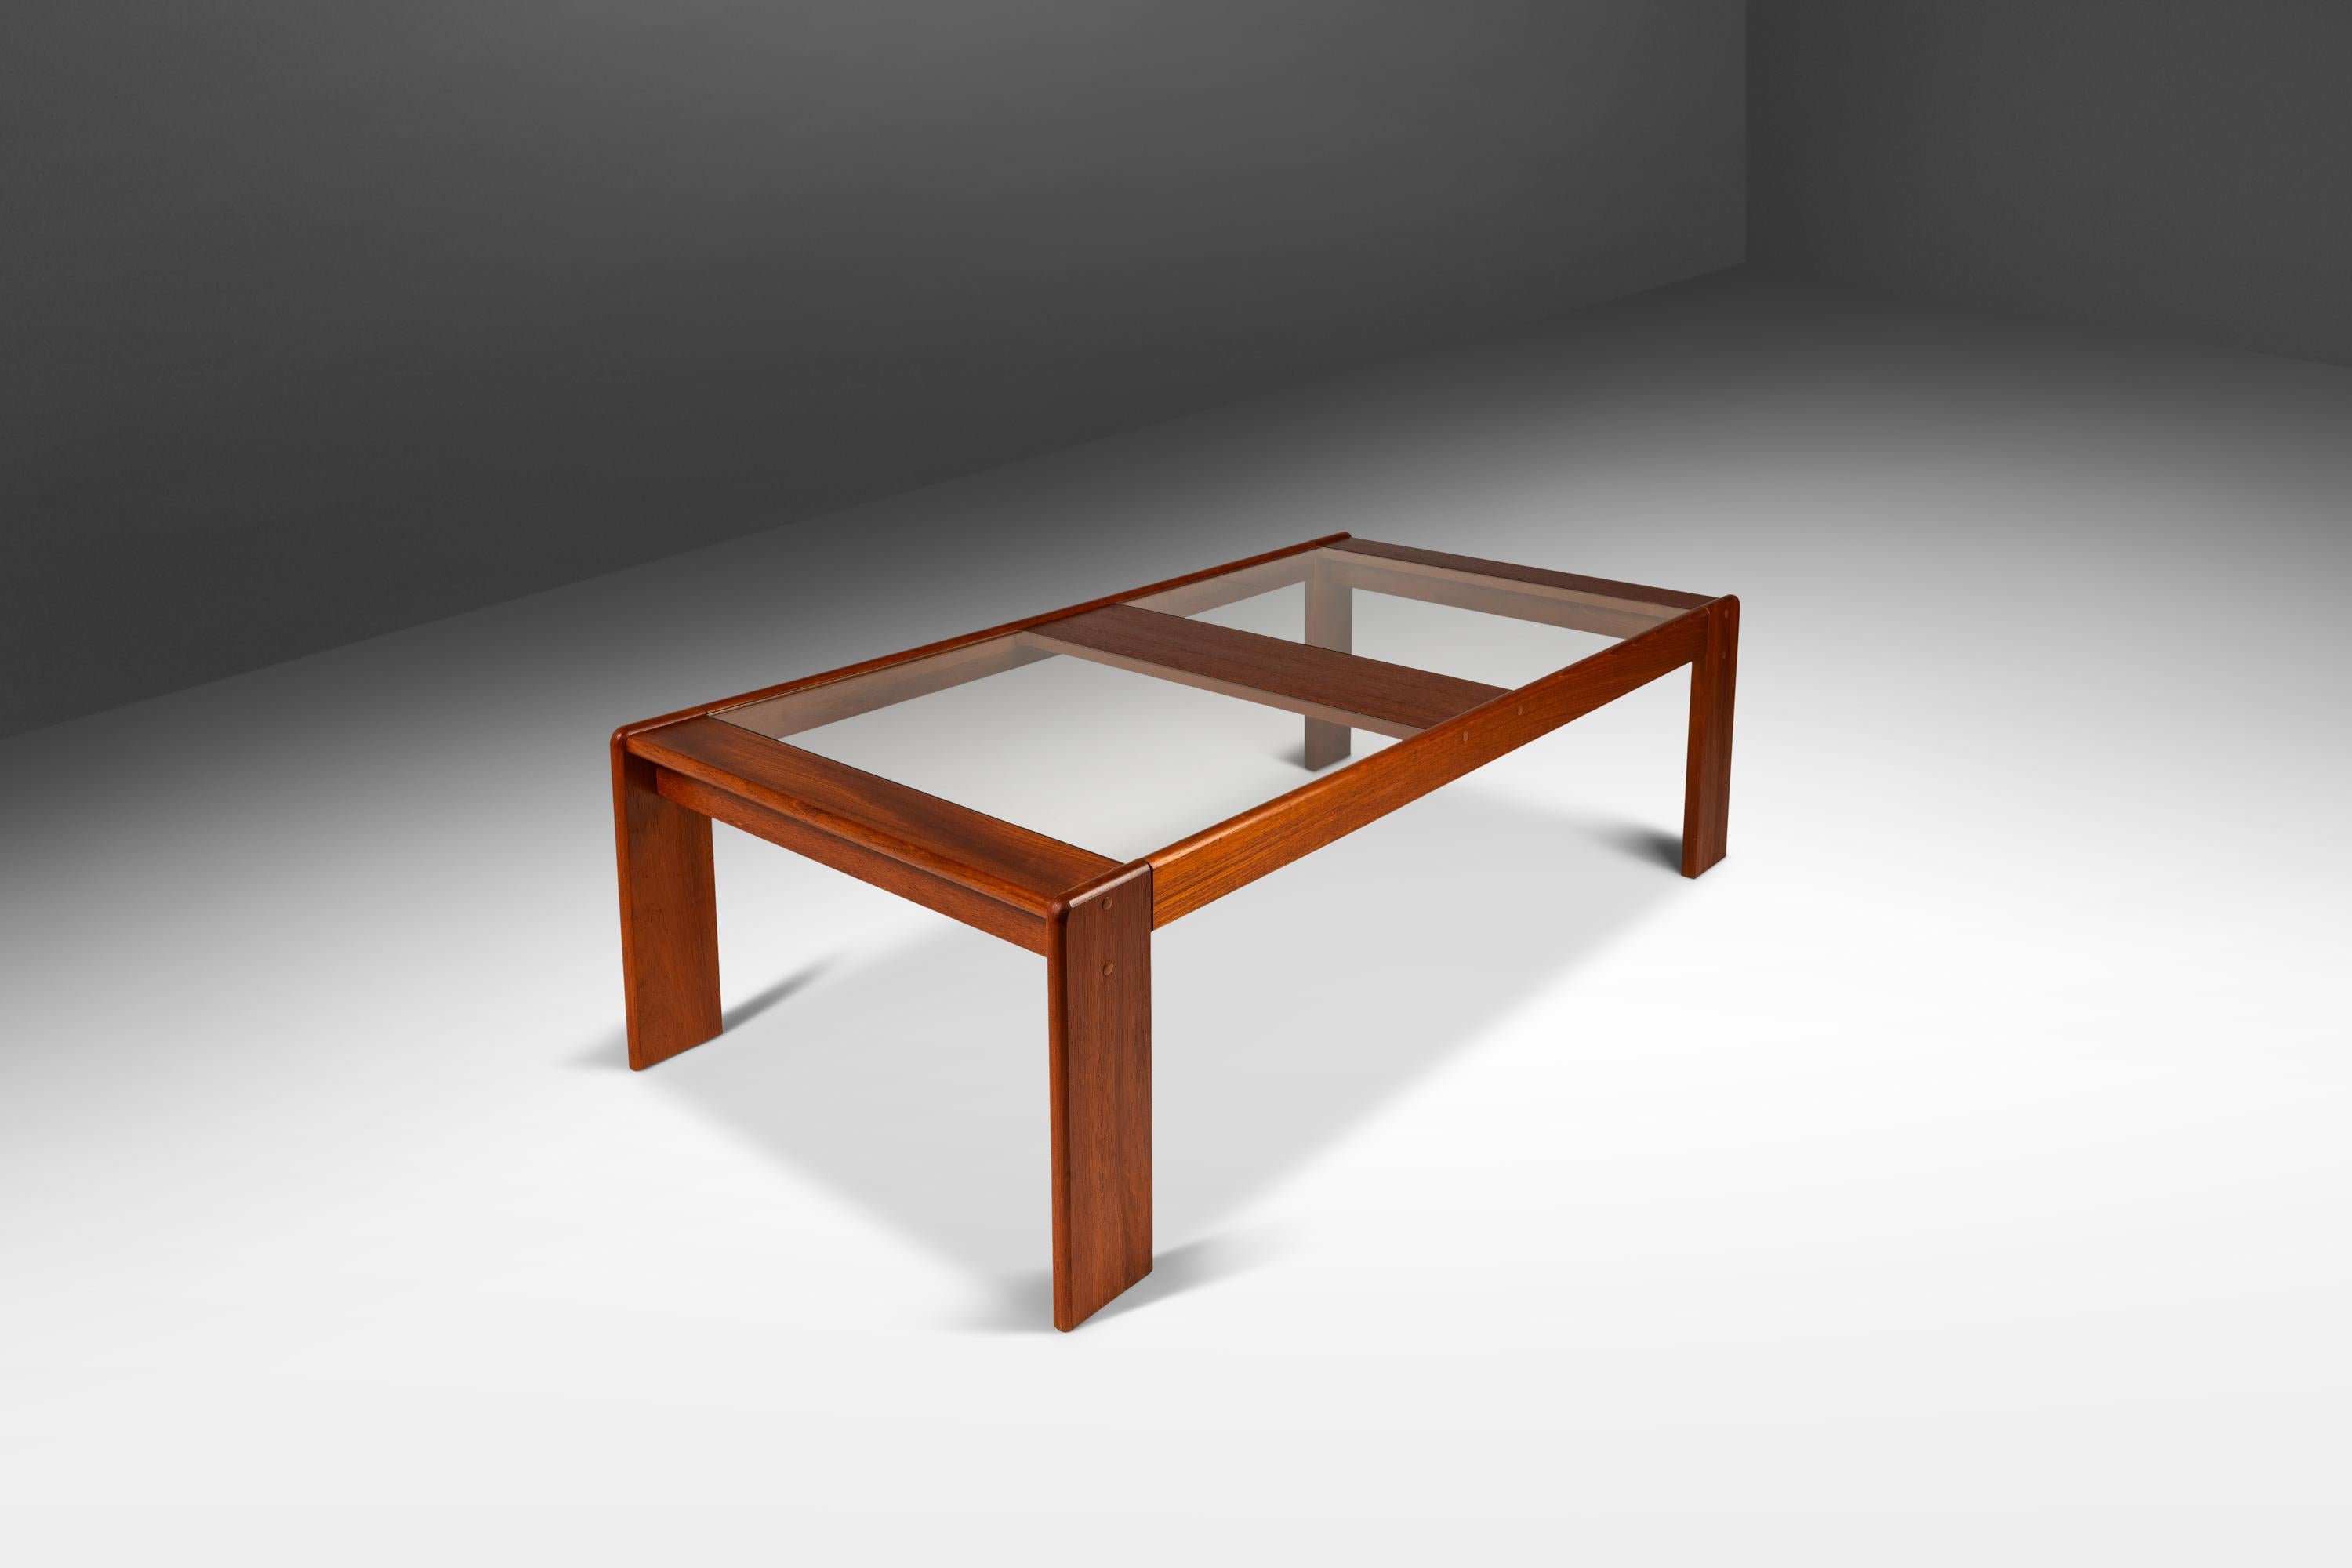 Voici une étonnante table basse de fabrication danoise, aussi rare qu'esthétiquement attrayante. Construite à partir d'un cadre en teck massif de Birmanie aux veinures vibrantes et surmontée de deux panneaux de verre, cette table est à la fois